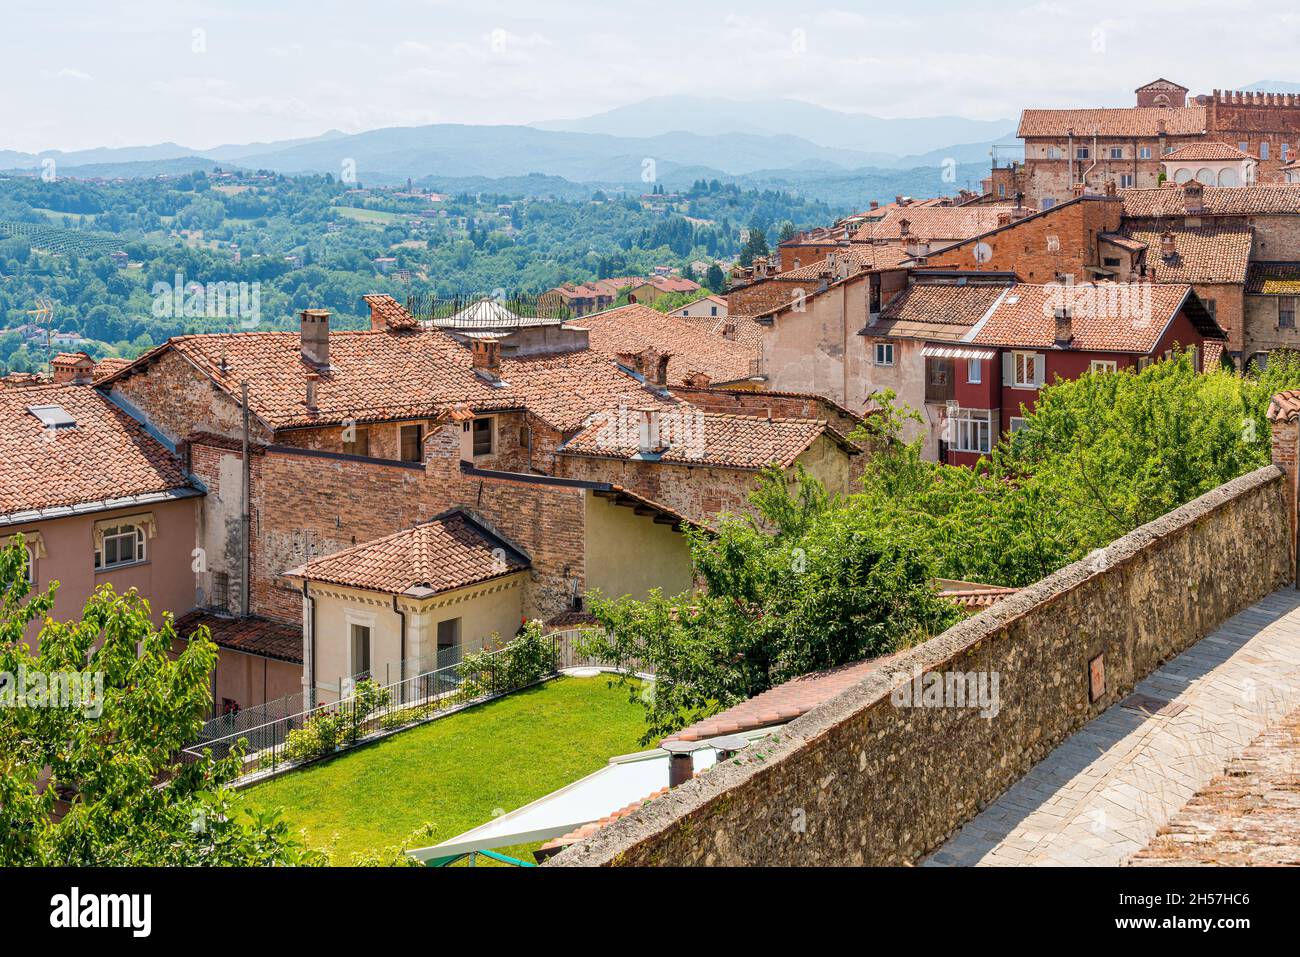 Vue panoramique depuis la vieille ville de Mondovì, dans la province de Cuneo, Piémont, nord de l'Italie. Banque D'Images